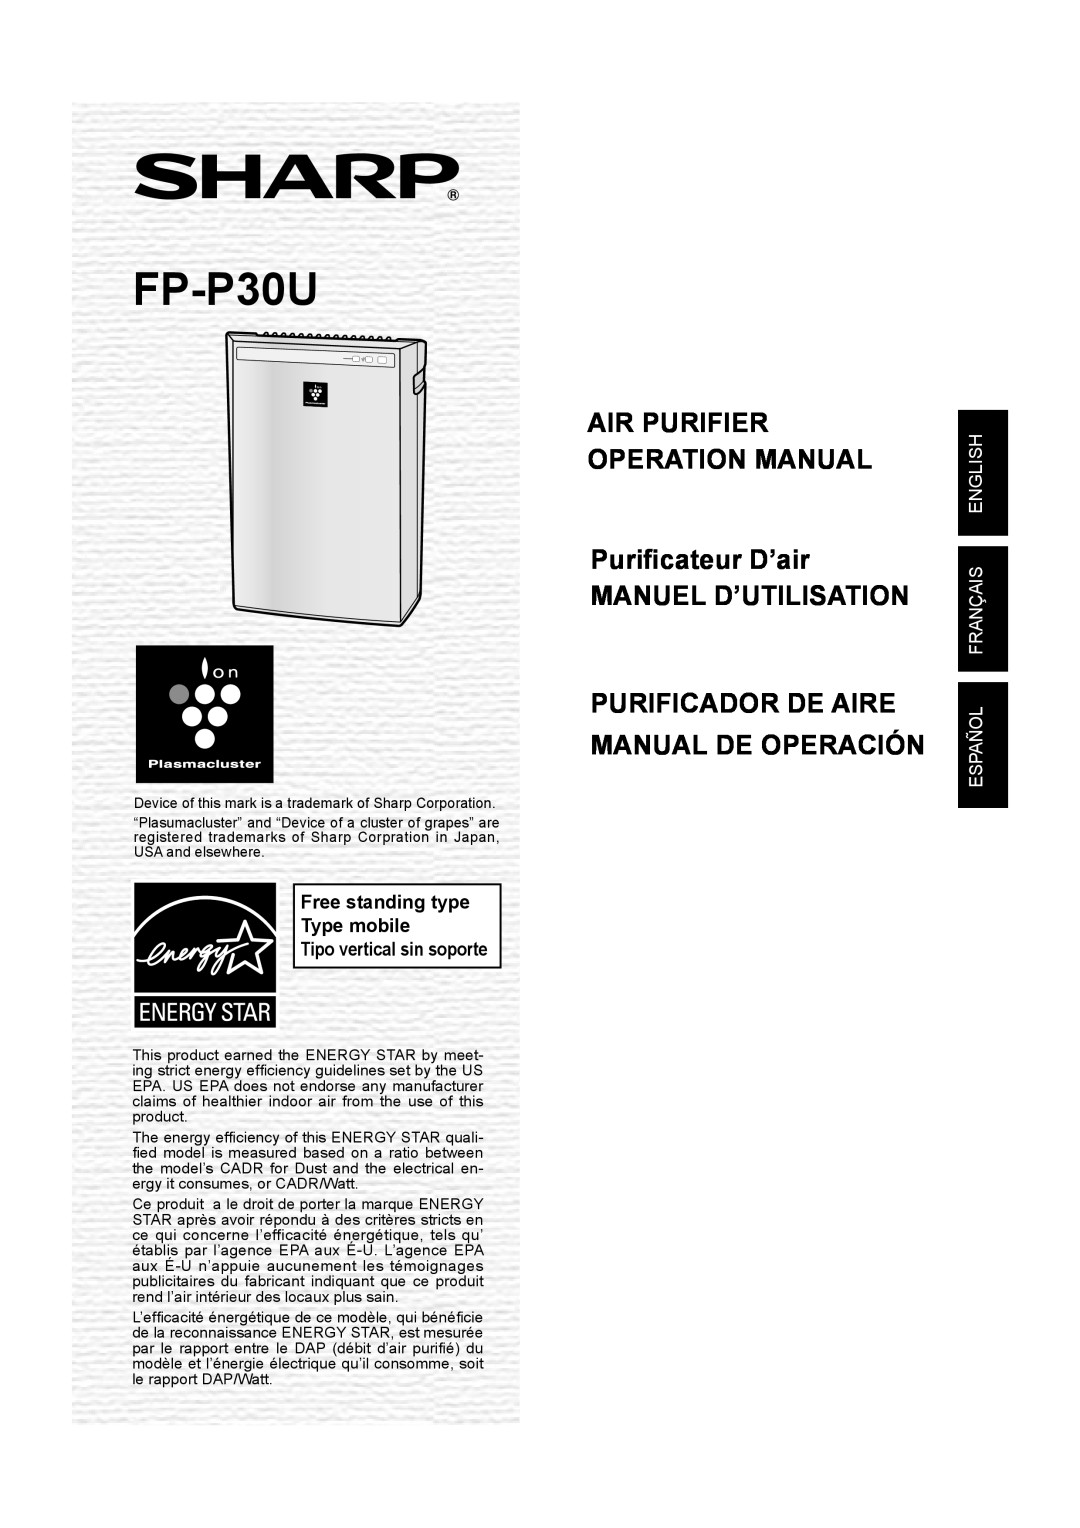 Sharp FP-P30U operation manual Manuel D’Utilisation, Purificador De Aire Manual De Operación, Tipo vertical sin soporte 